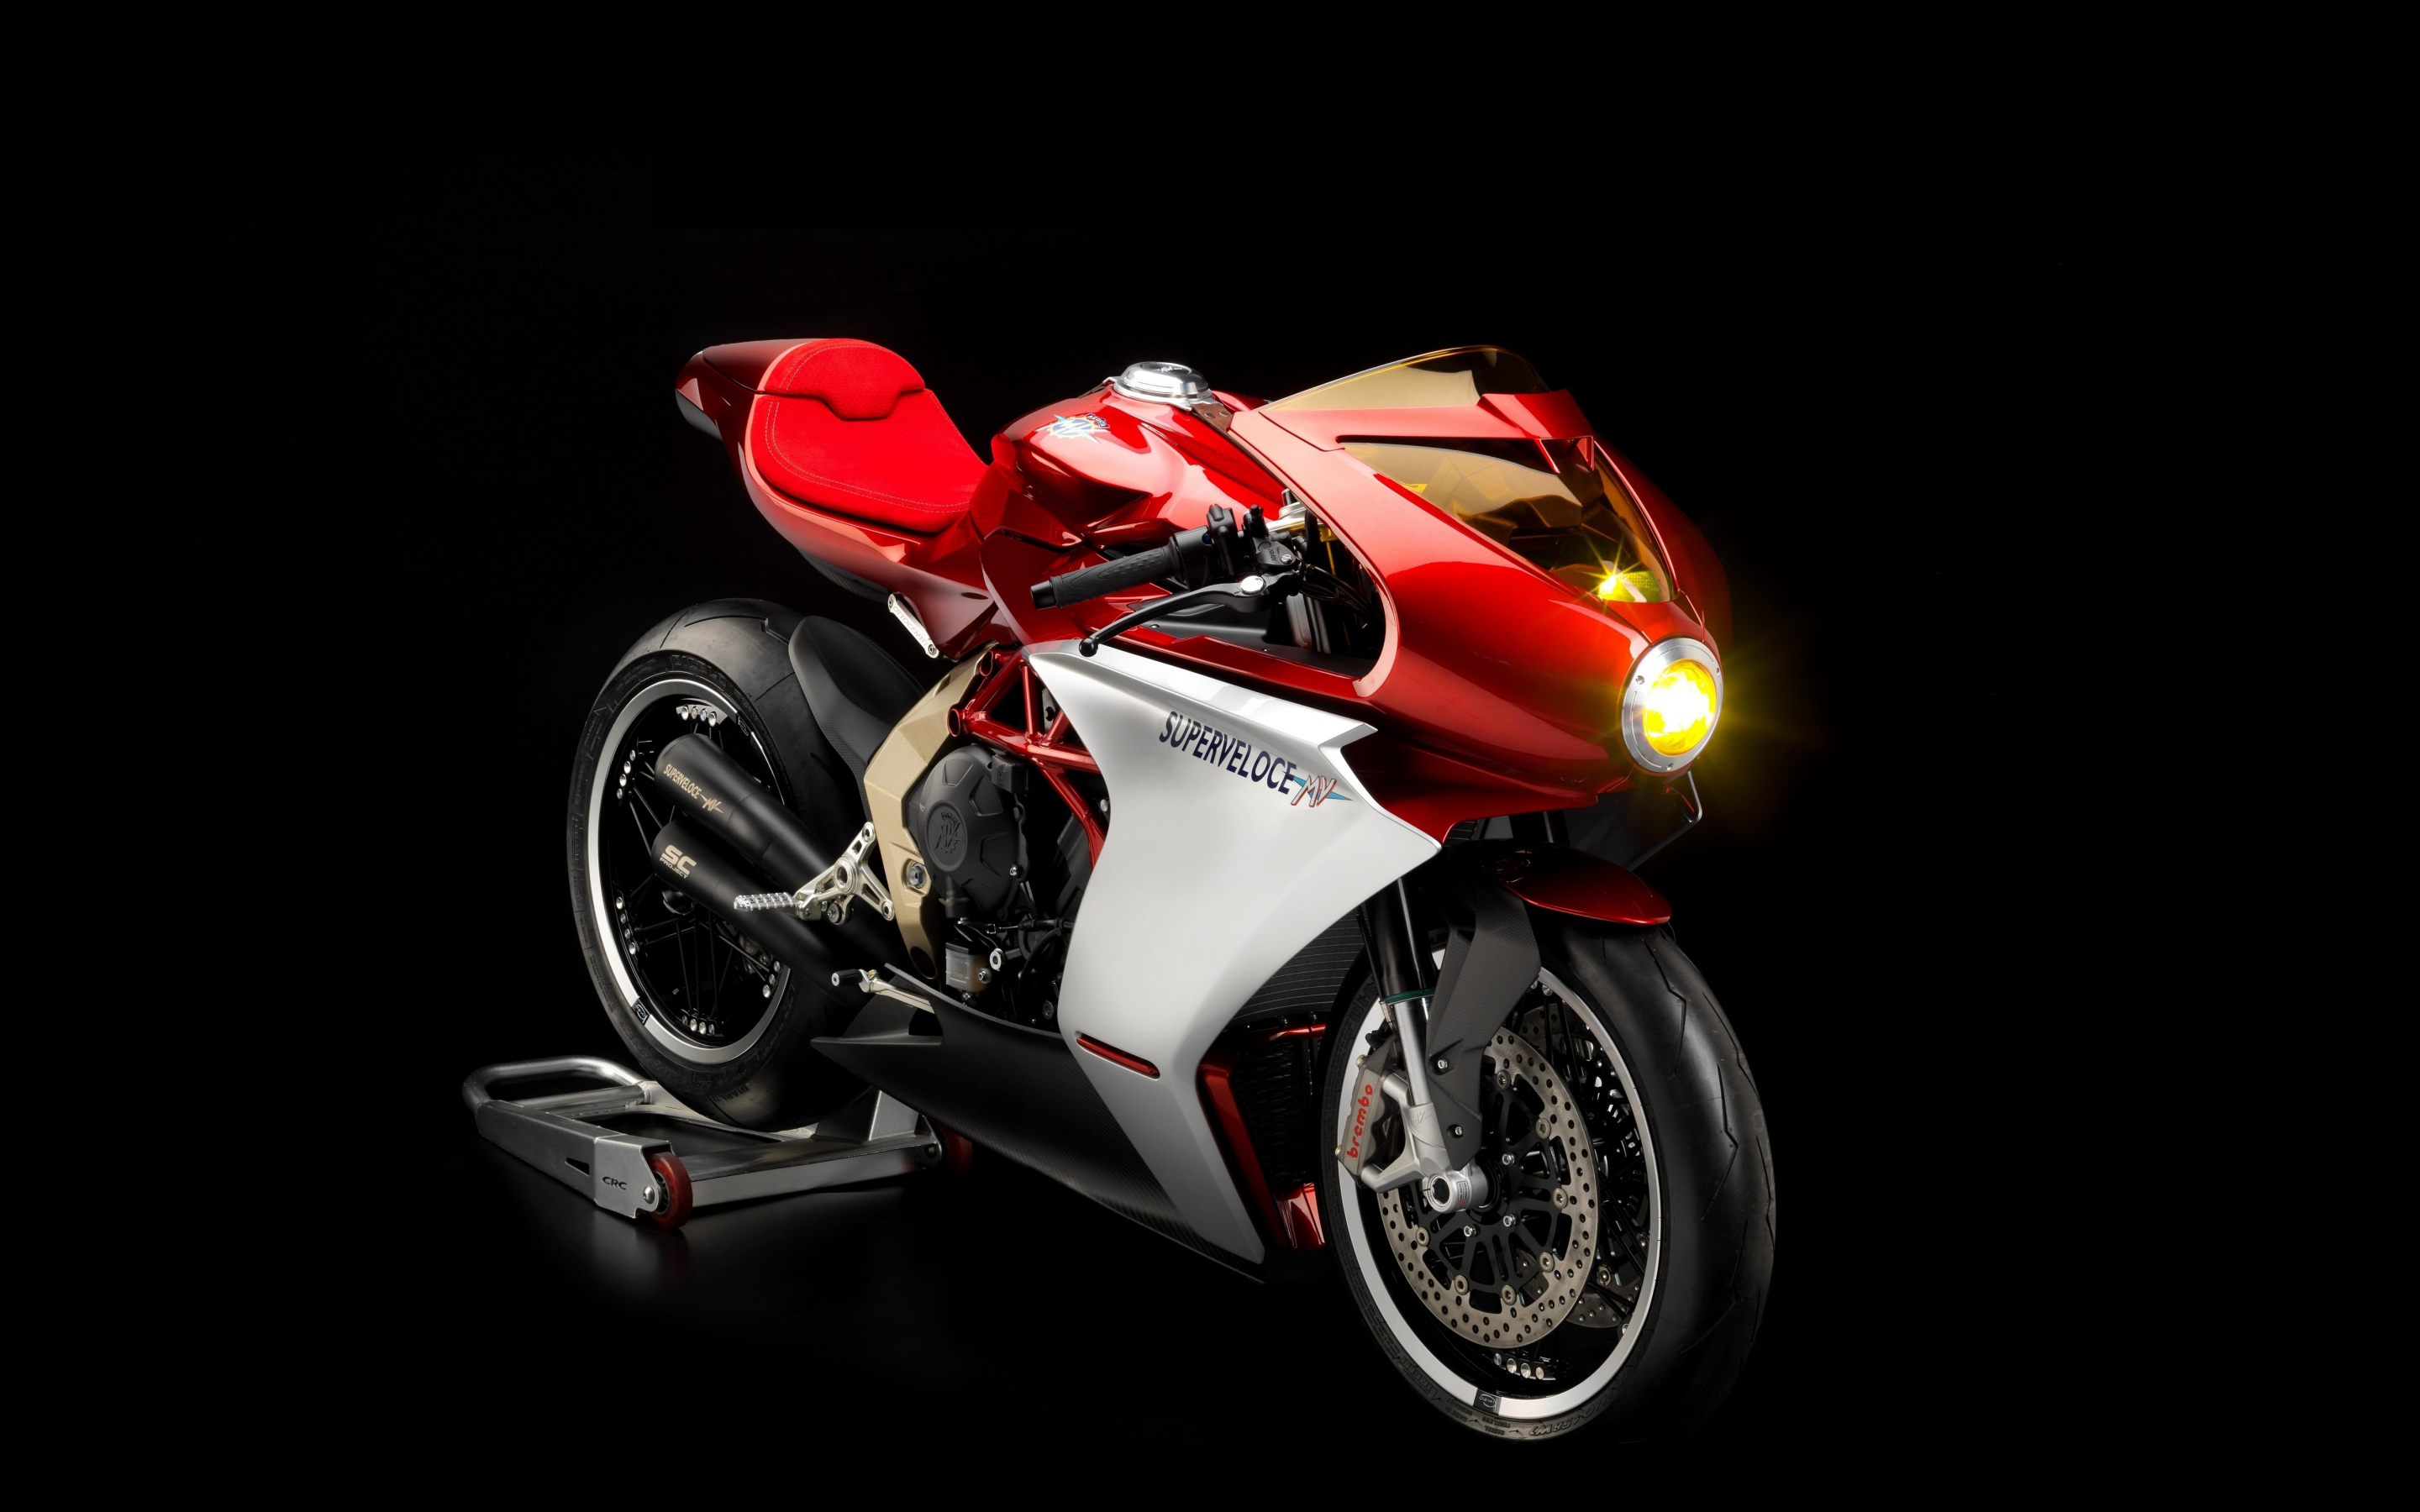 Sports bike, MV Agusta Superveloce 800, 2880x1800 wallpaper